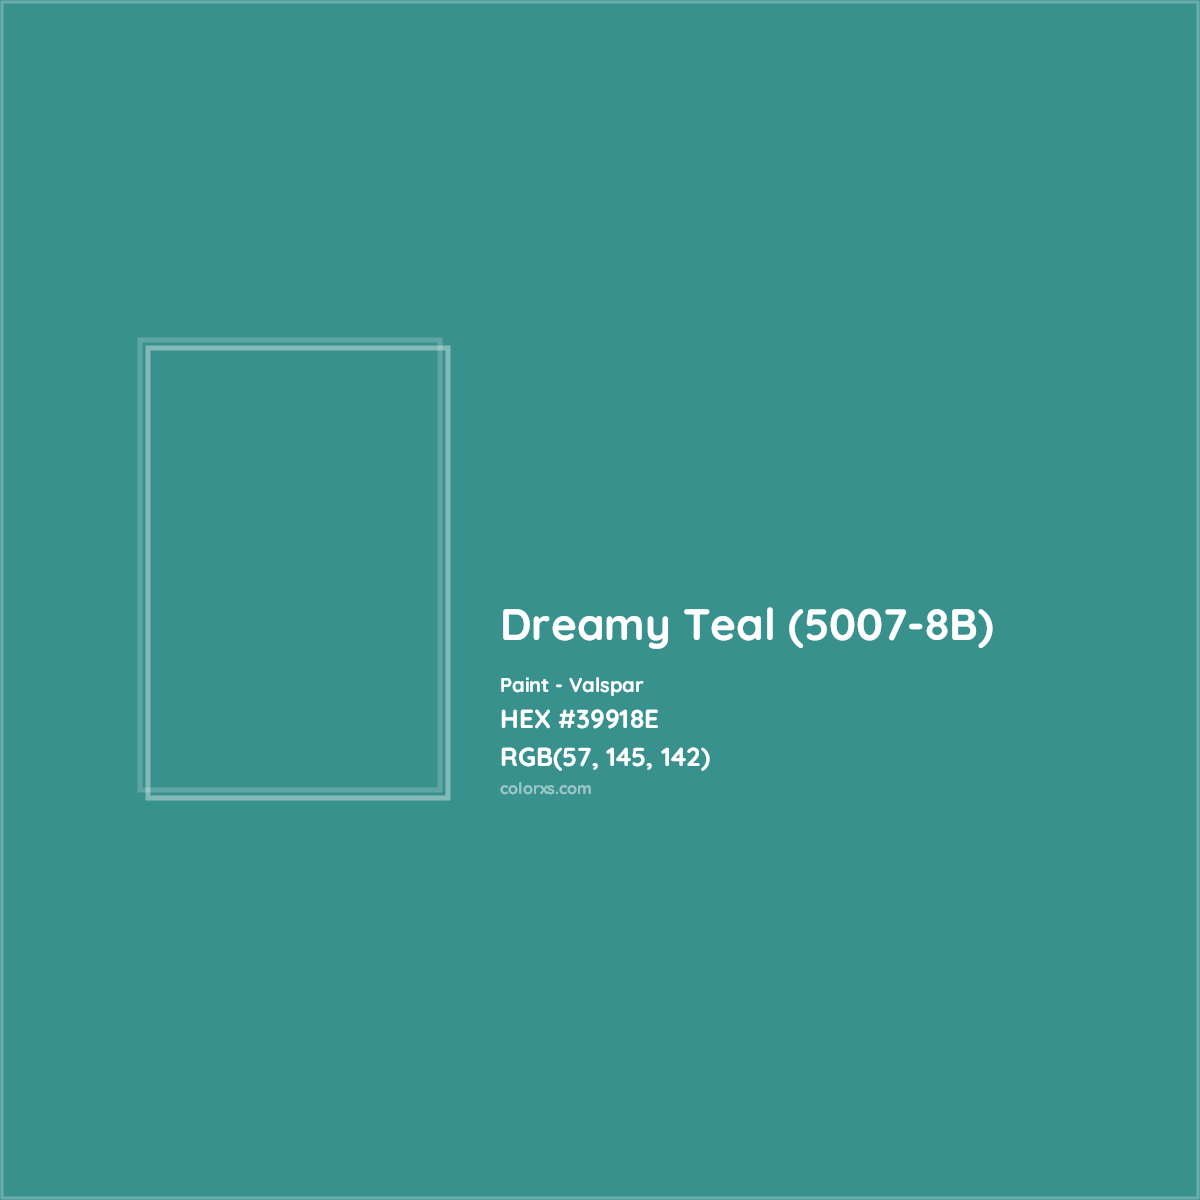 HEX #39918E Dreamy Teal (5007-8B) Paint Valspar - Color Code